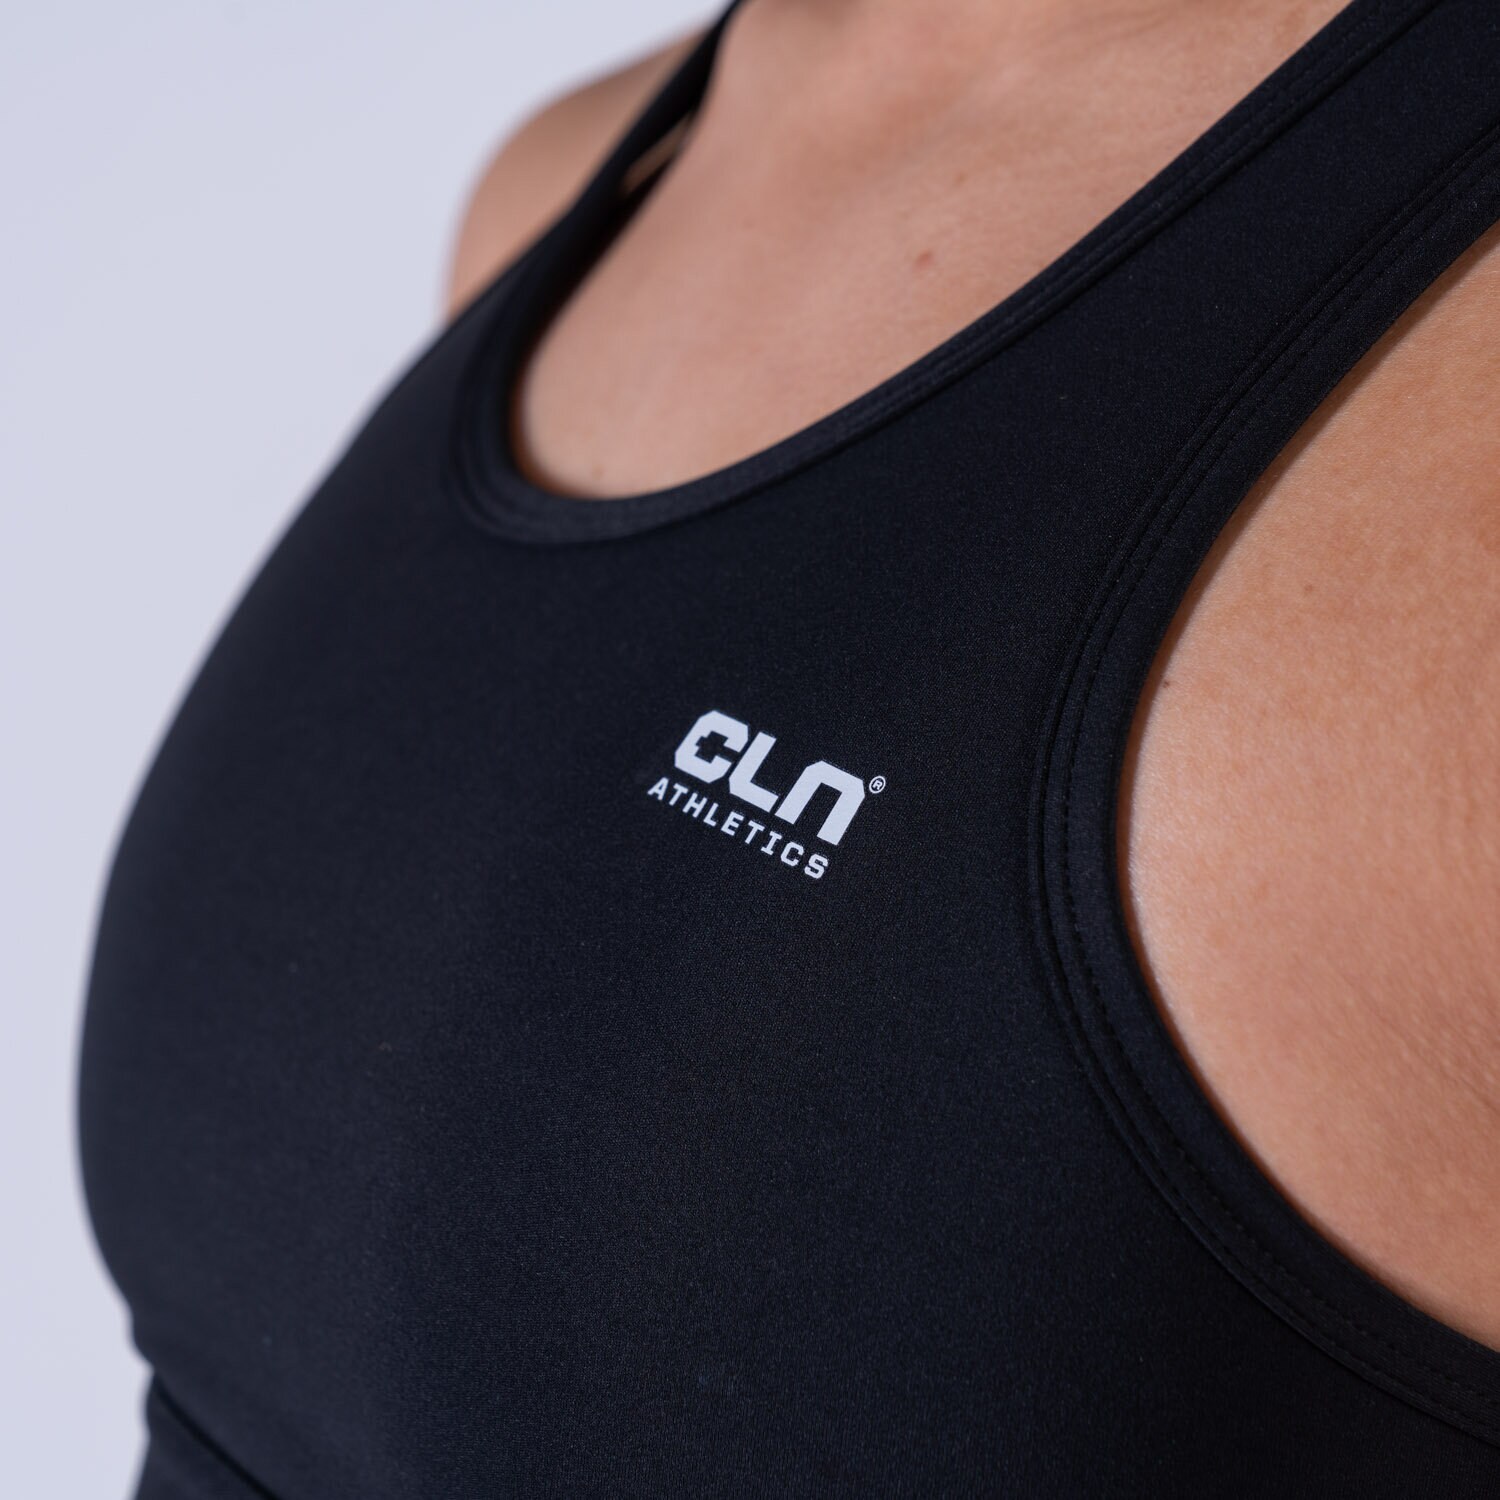 CLN Inhale ws sport bra Black